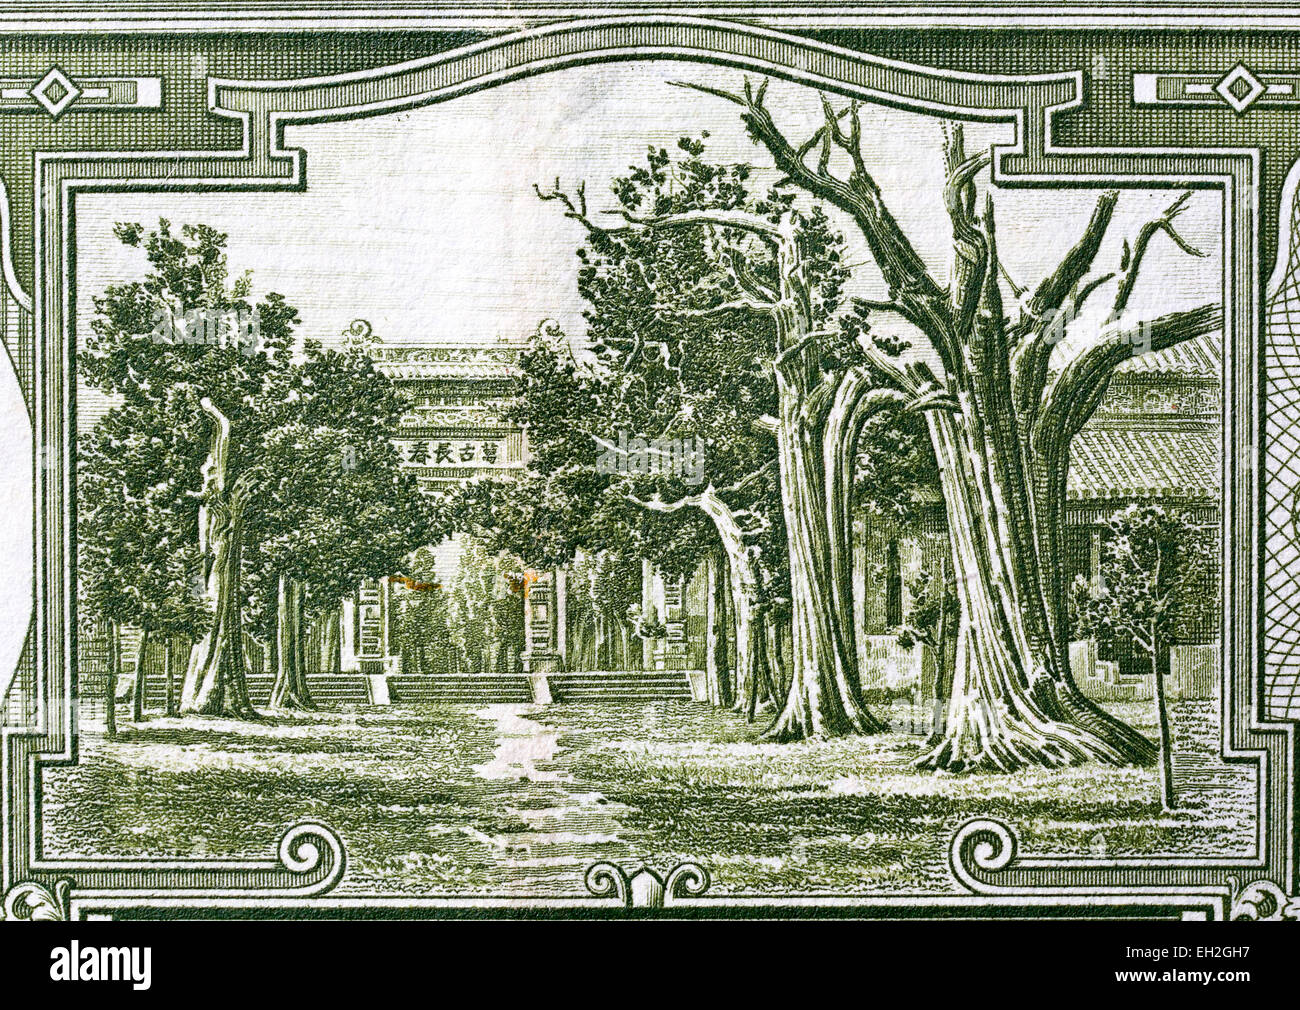 Entrance gate, 5 Yuan banknote, China, 1936 Stock Photo